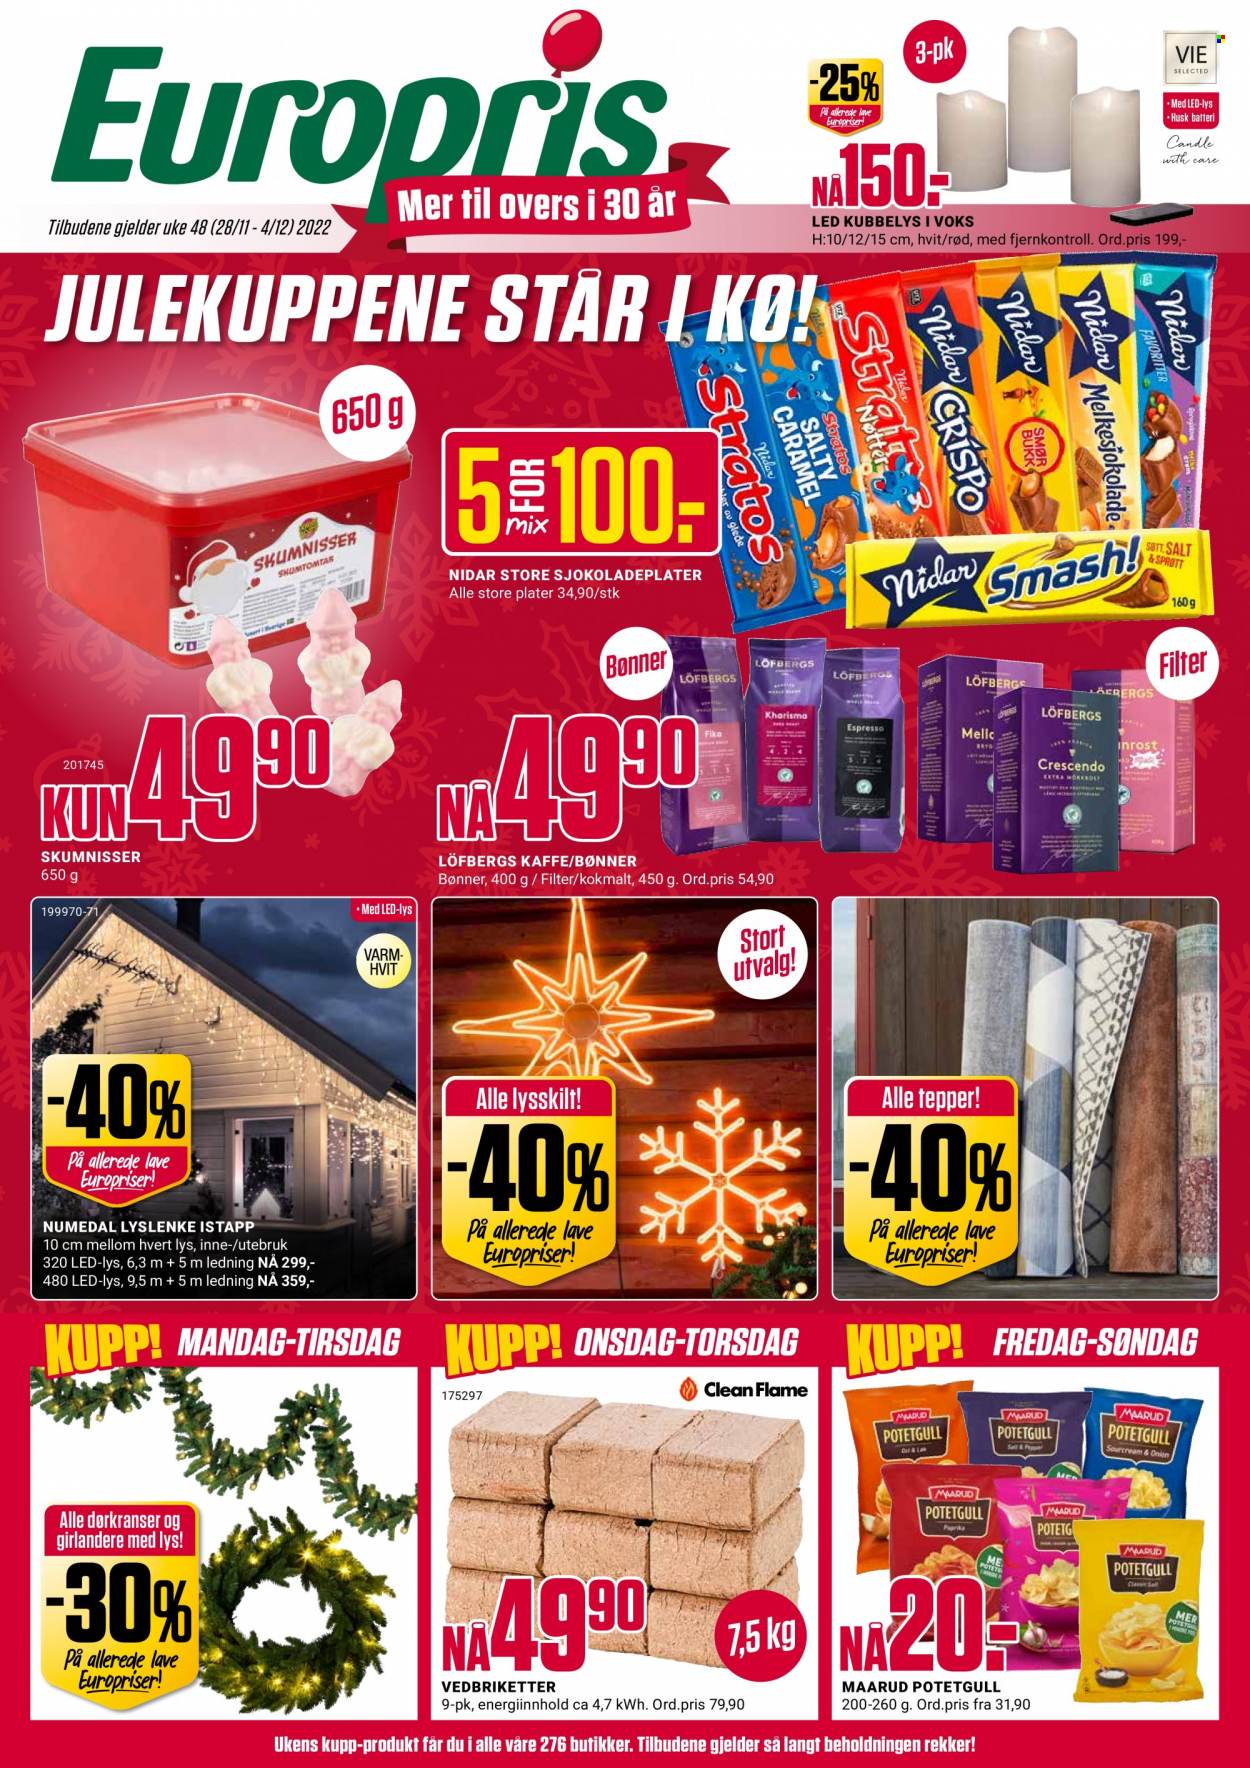 thumbnail - Kundeavis Europris - 28.11.2022 - 4.12.2022 - Produkter fra tilbudsaviser - bønner, batteri, teppe. Side 1.